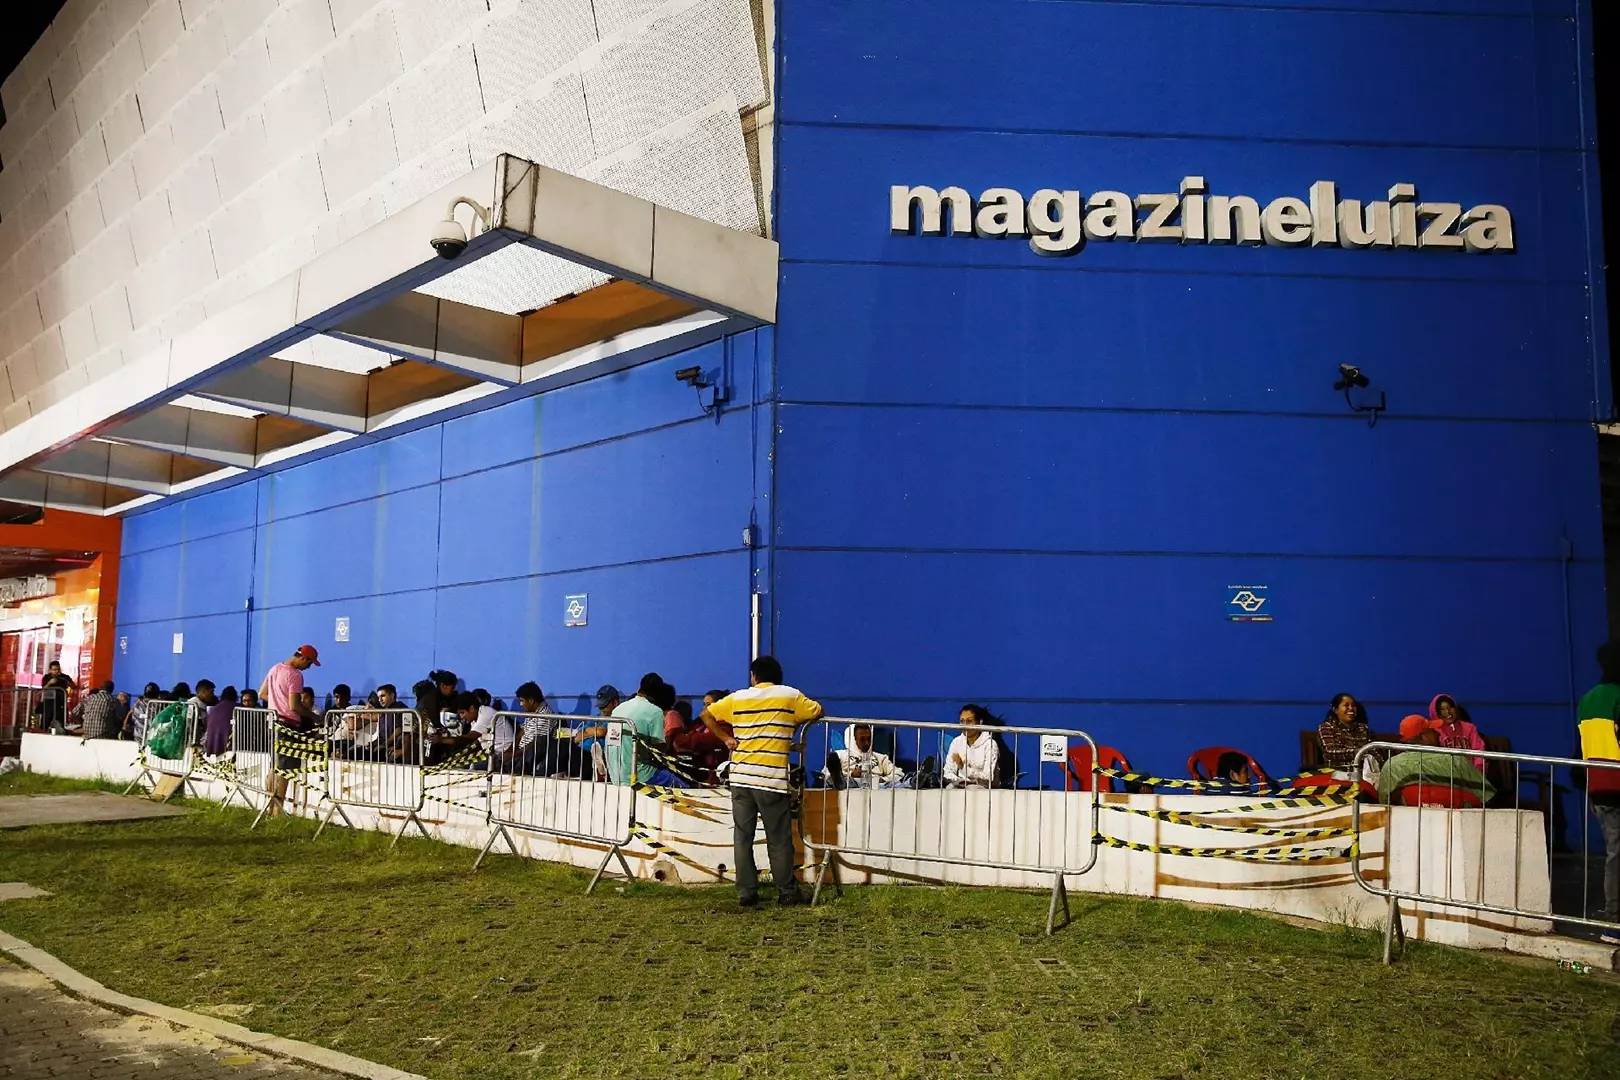 Magazine Luiza fecha 4º trimestre com prejuízo de R$ 35,9 milhões